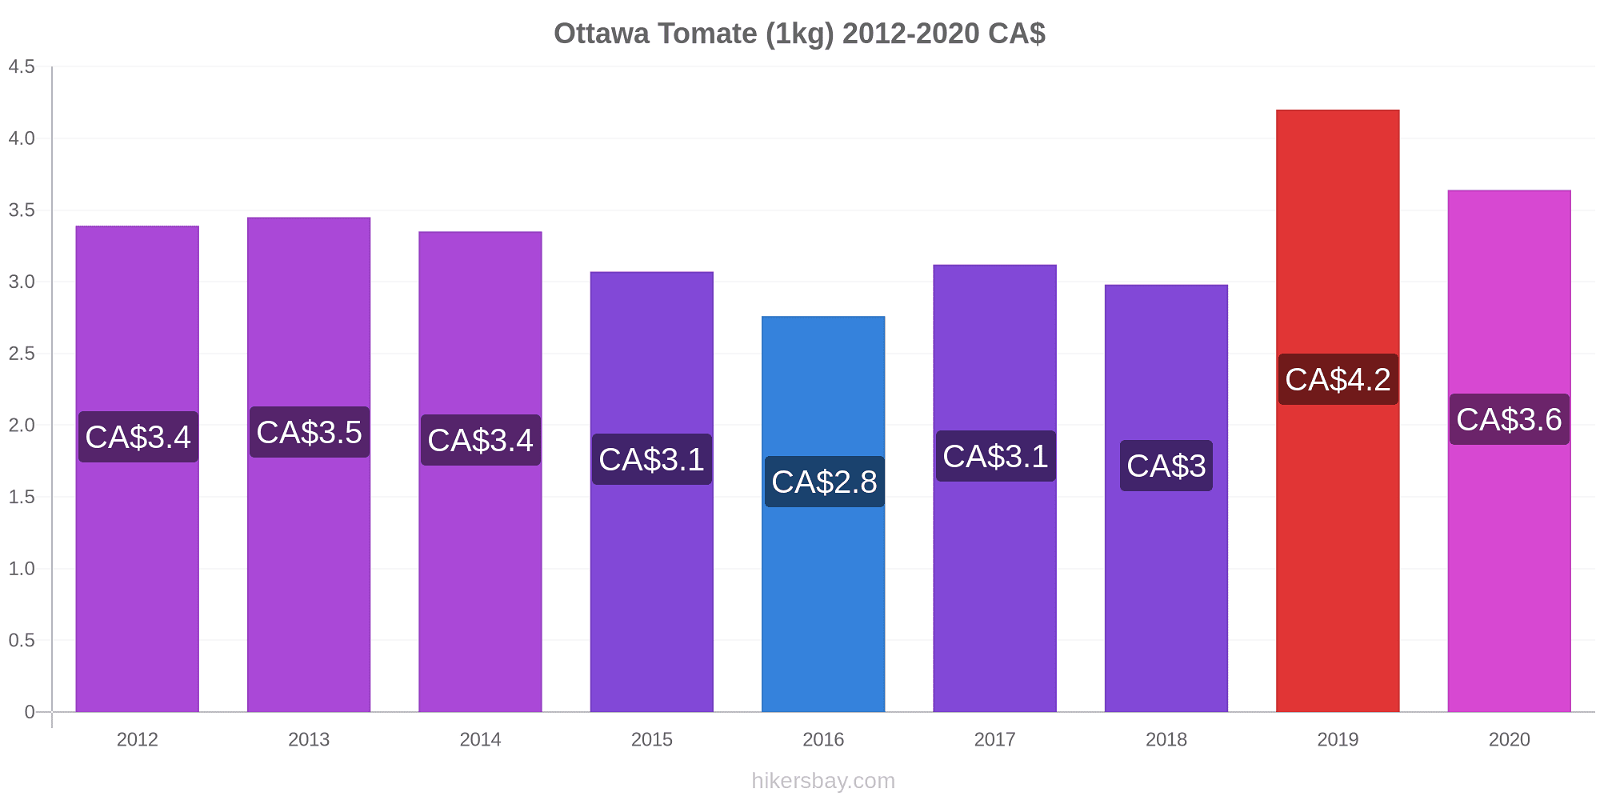 Ottawa cambios de precios Tomate (1kg) hikersbay.com